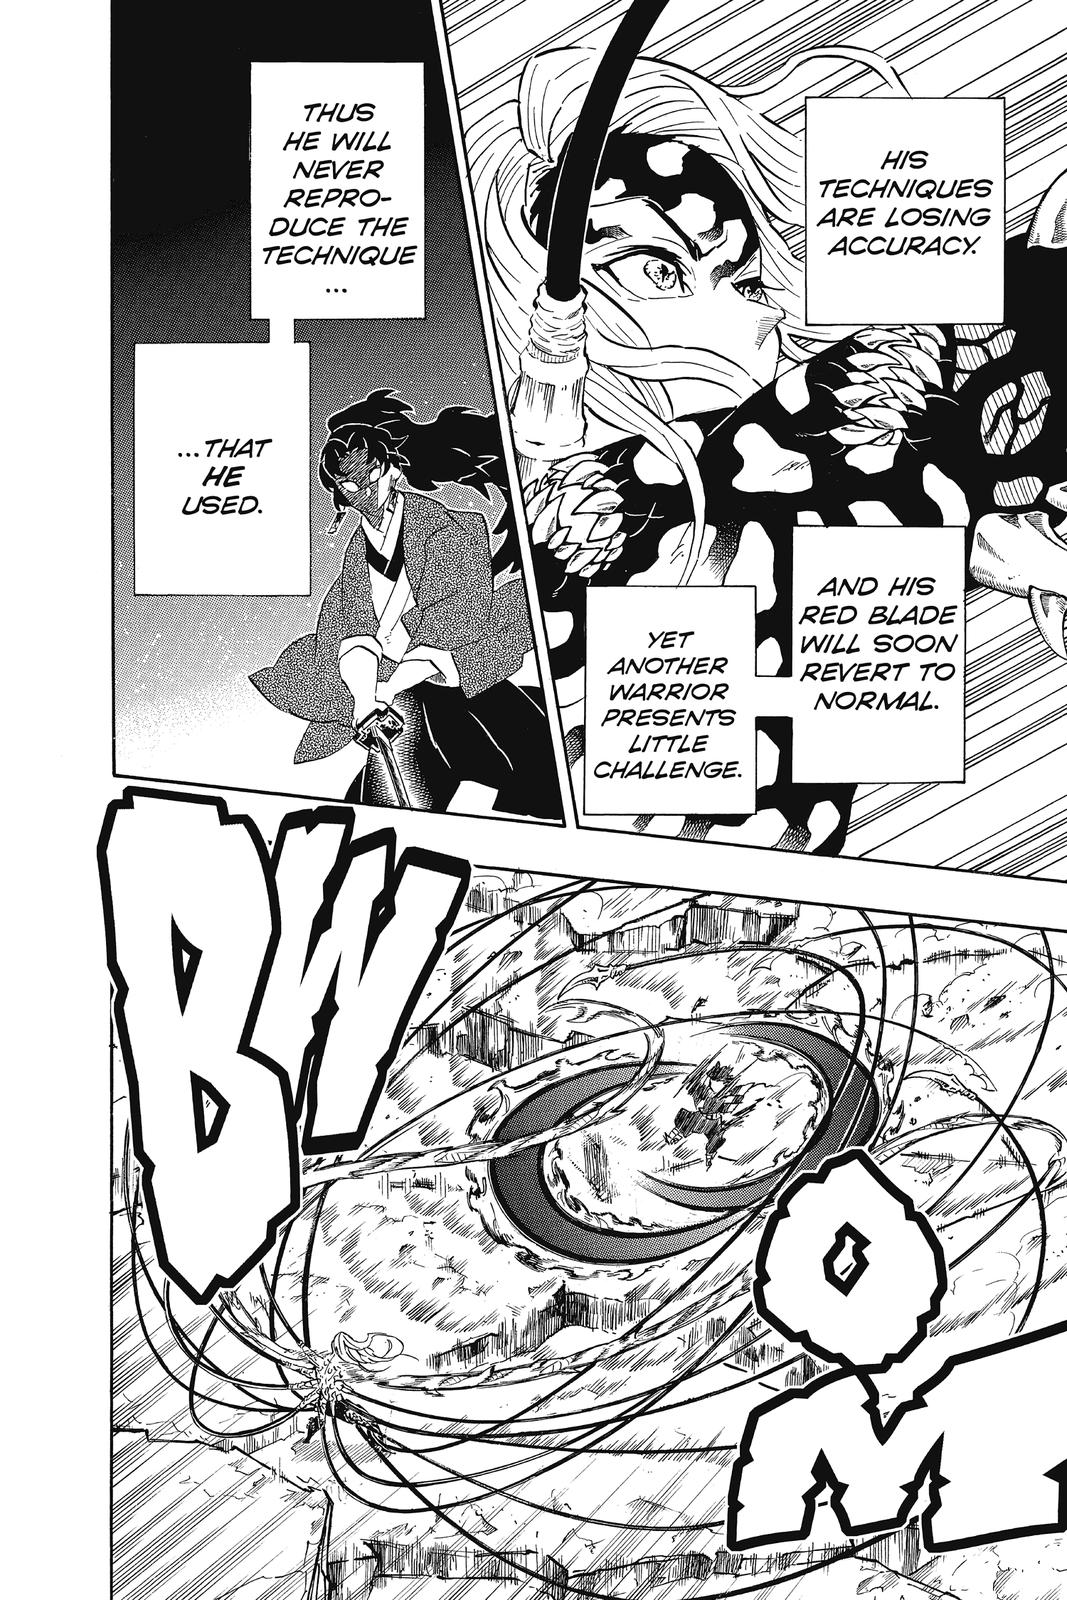 Demon Slayer Manga Manga Chapter - 193 - image 9